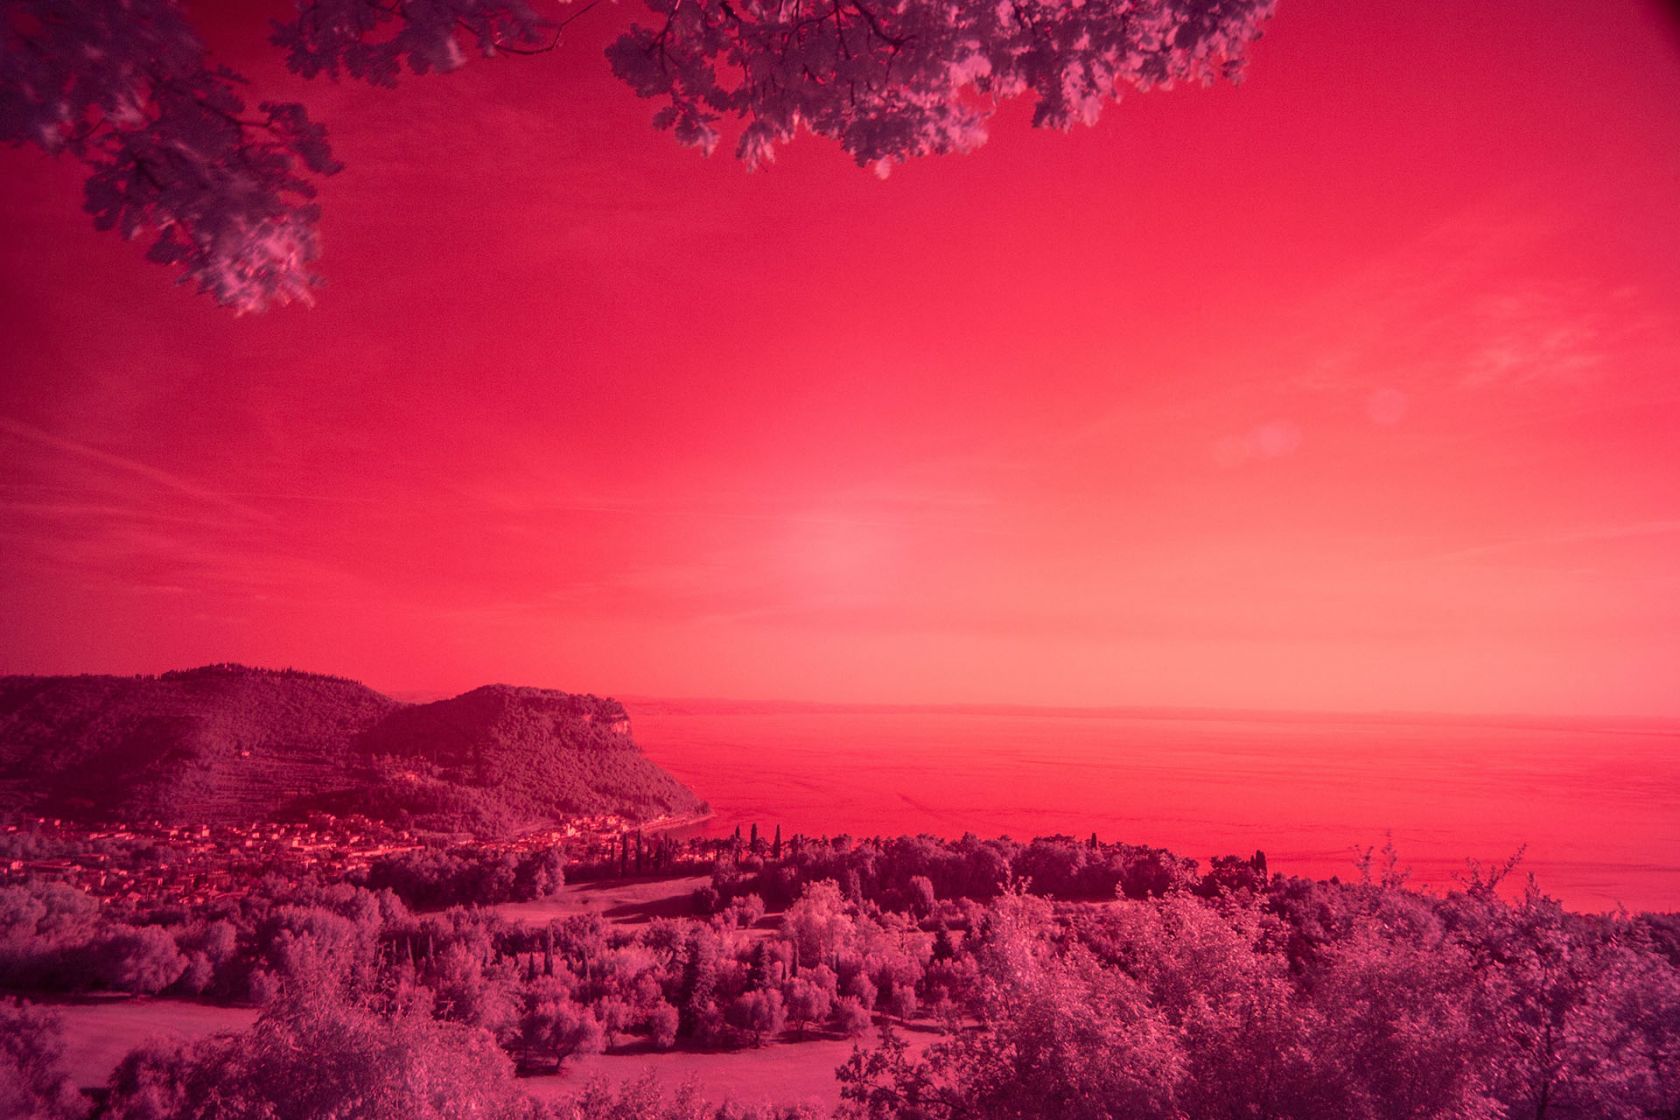 Panorama
Keywords: infrared